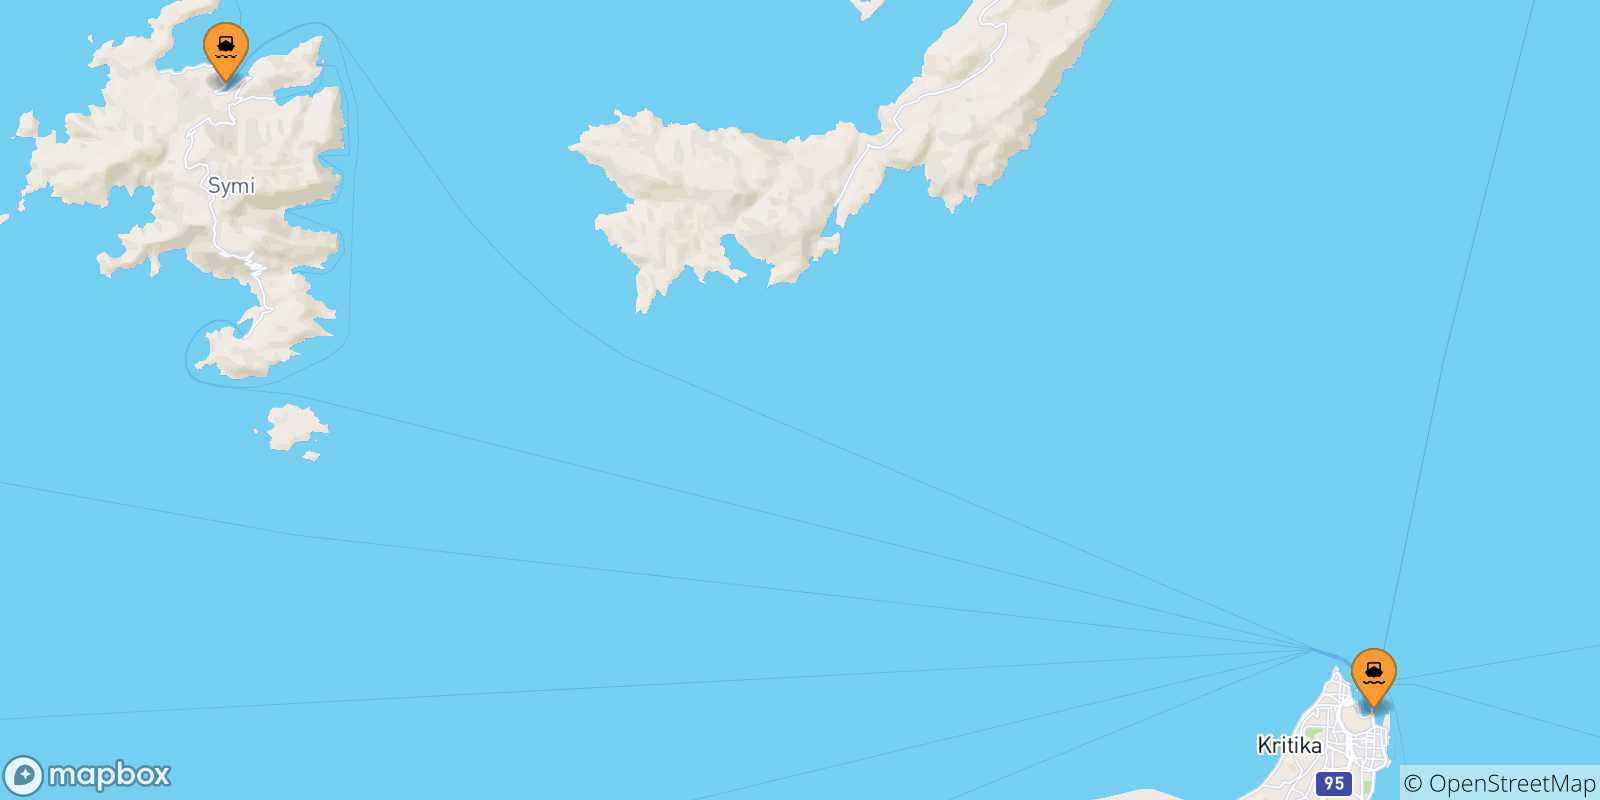 Mappa delle possibili rotte tra le Isole Dodecaneso e Panormitis (Symi)